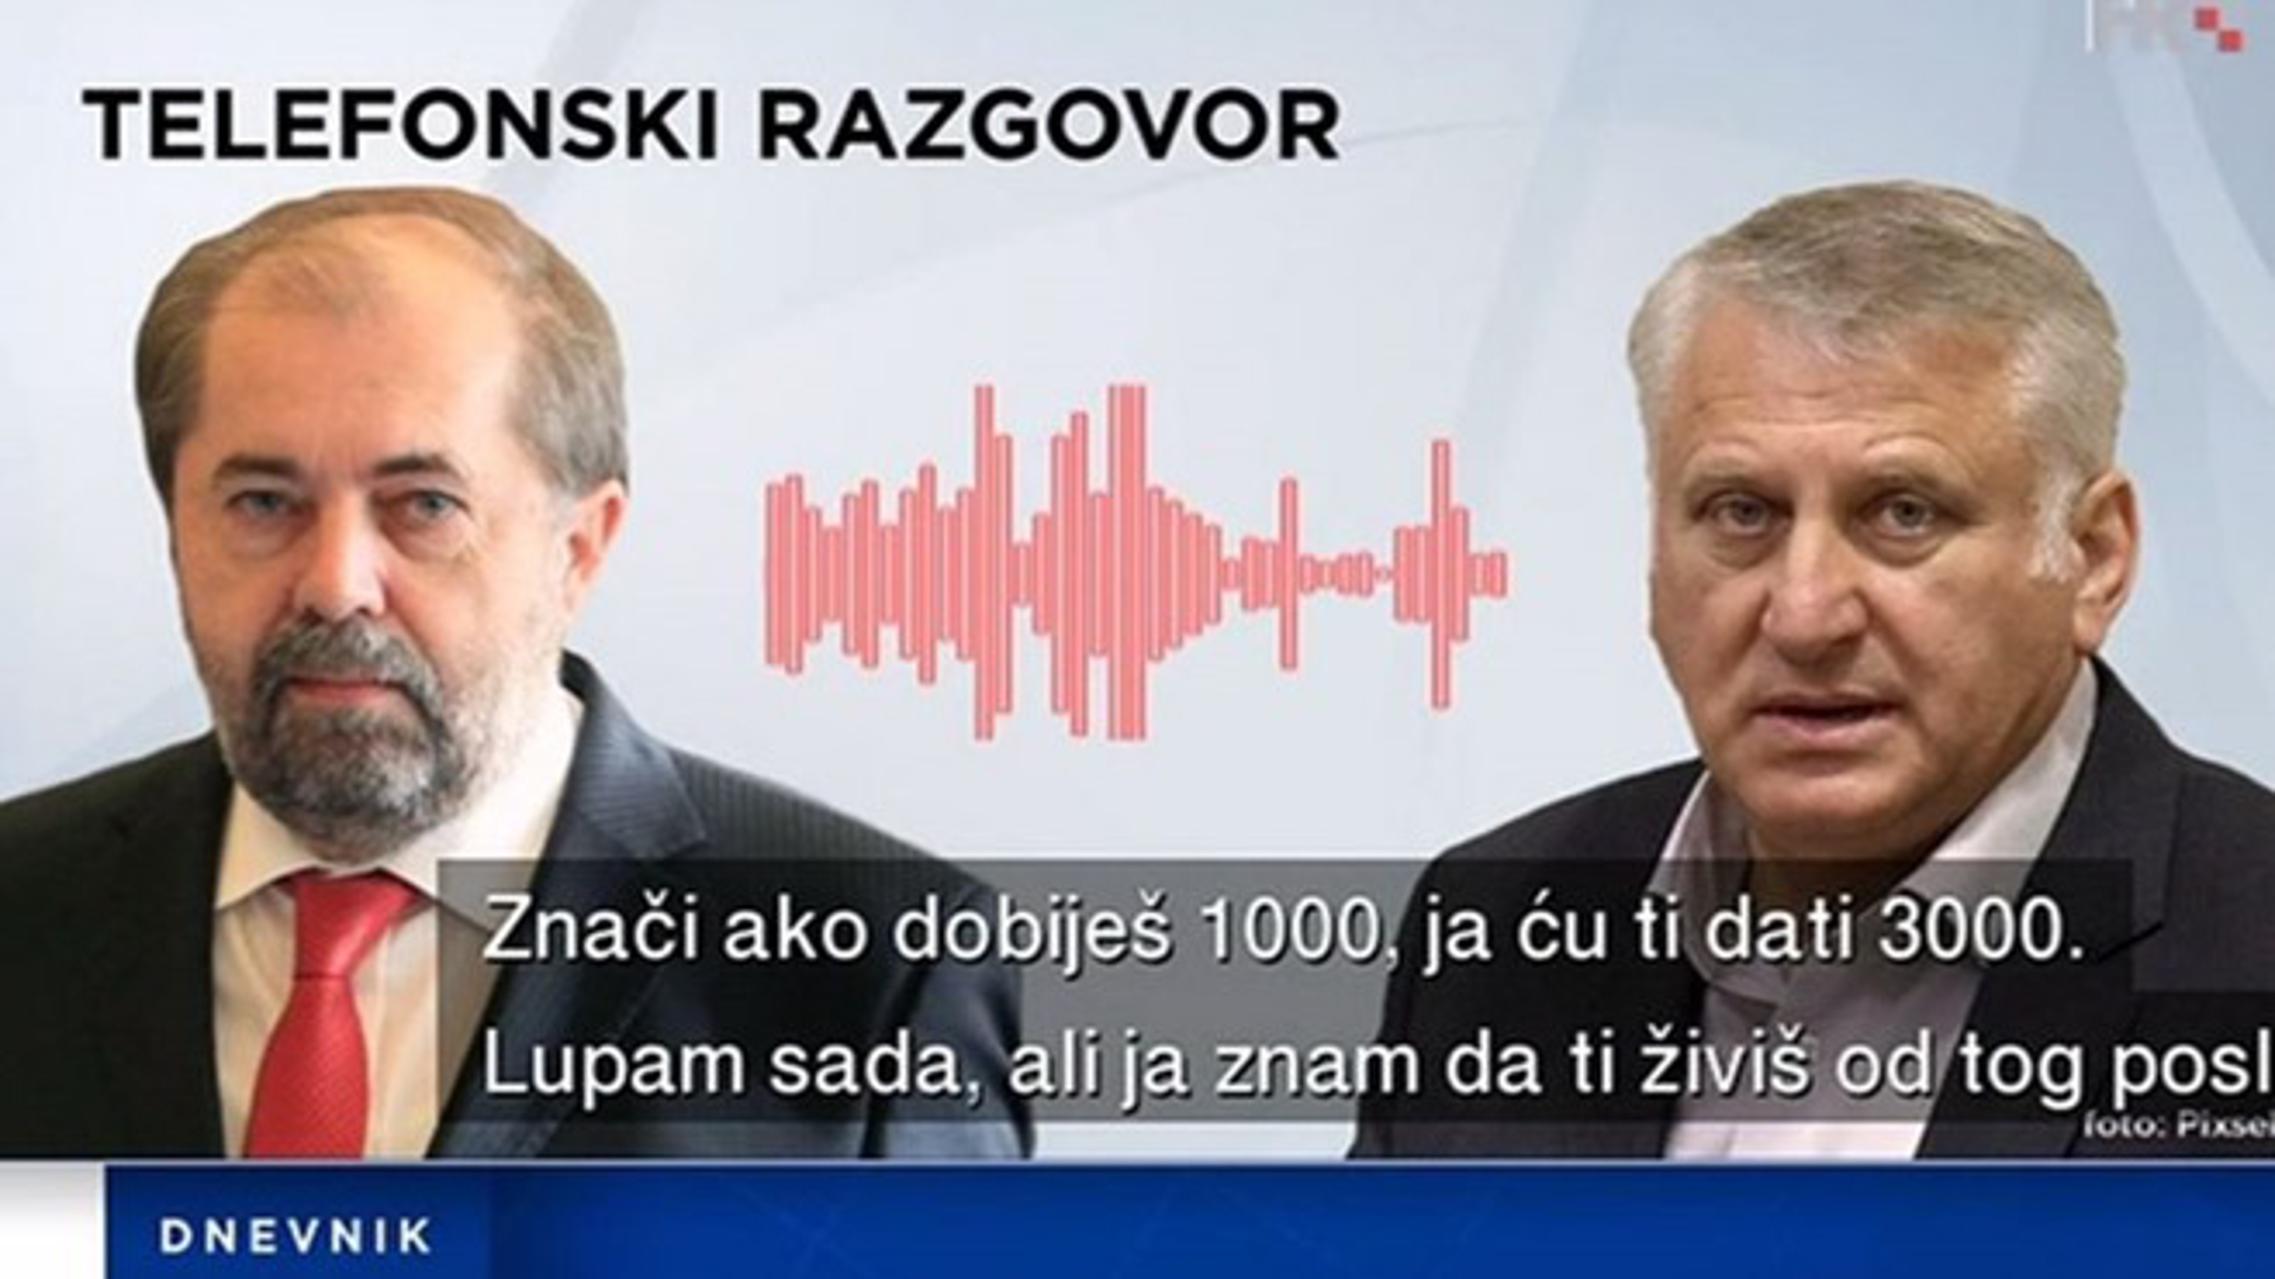 Ilustracija telefonskog razgovora između novinara Drage Hedla i saborskog zastupnika Franje Lucića.